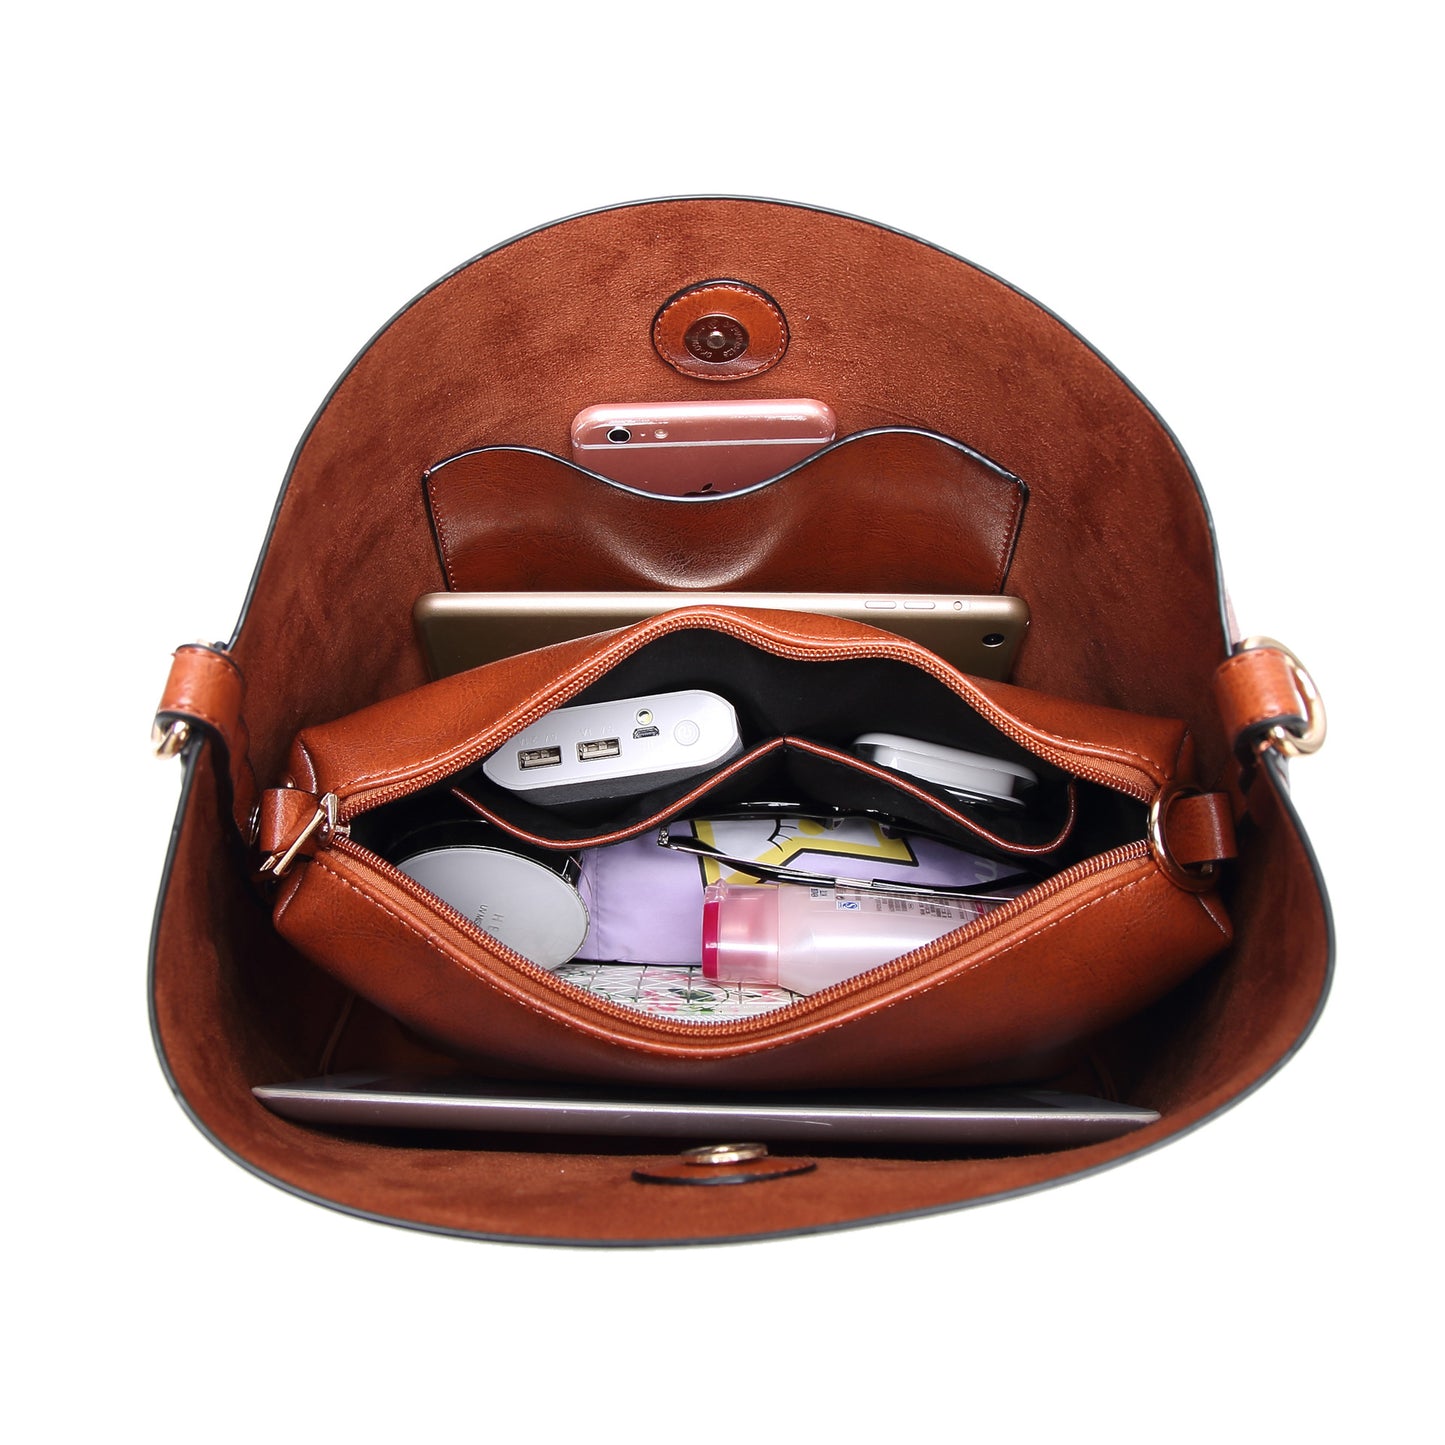 Women Large Capacity PU Leather Top Handle Satchel Tote Bag Set  (Tote Bag + Crossbody bag)